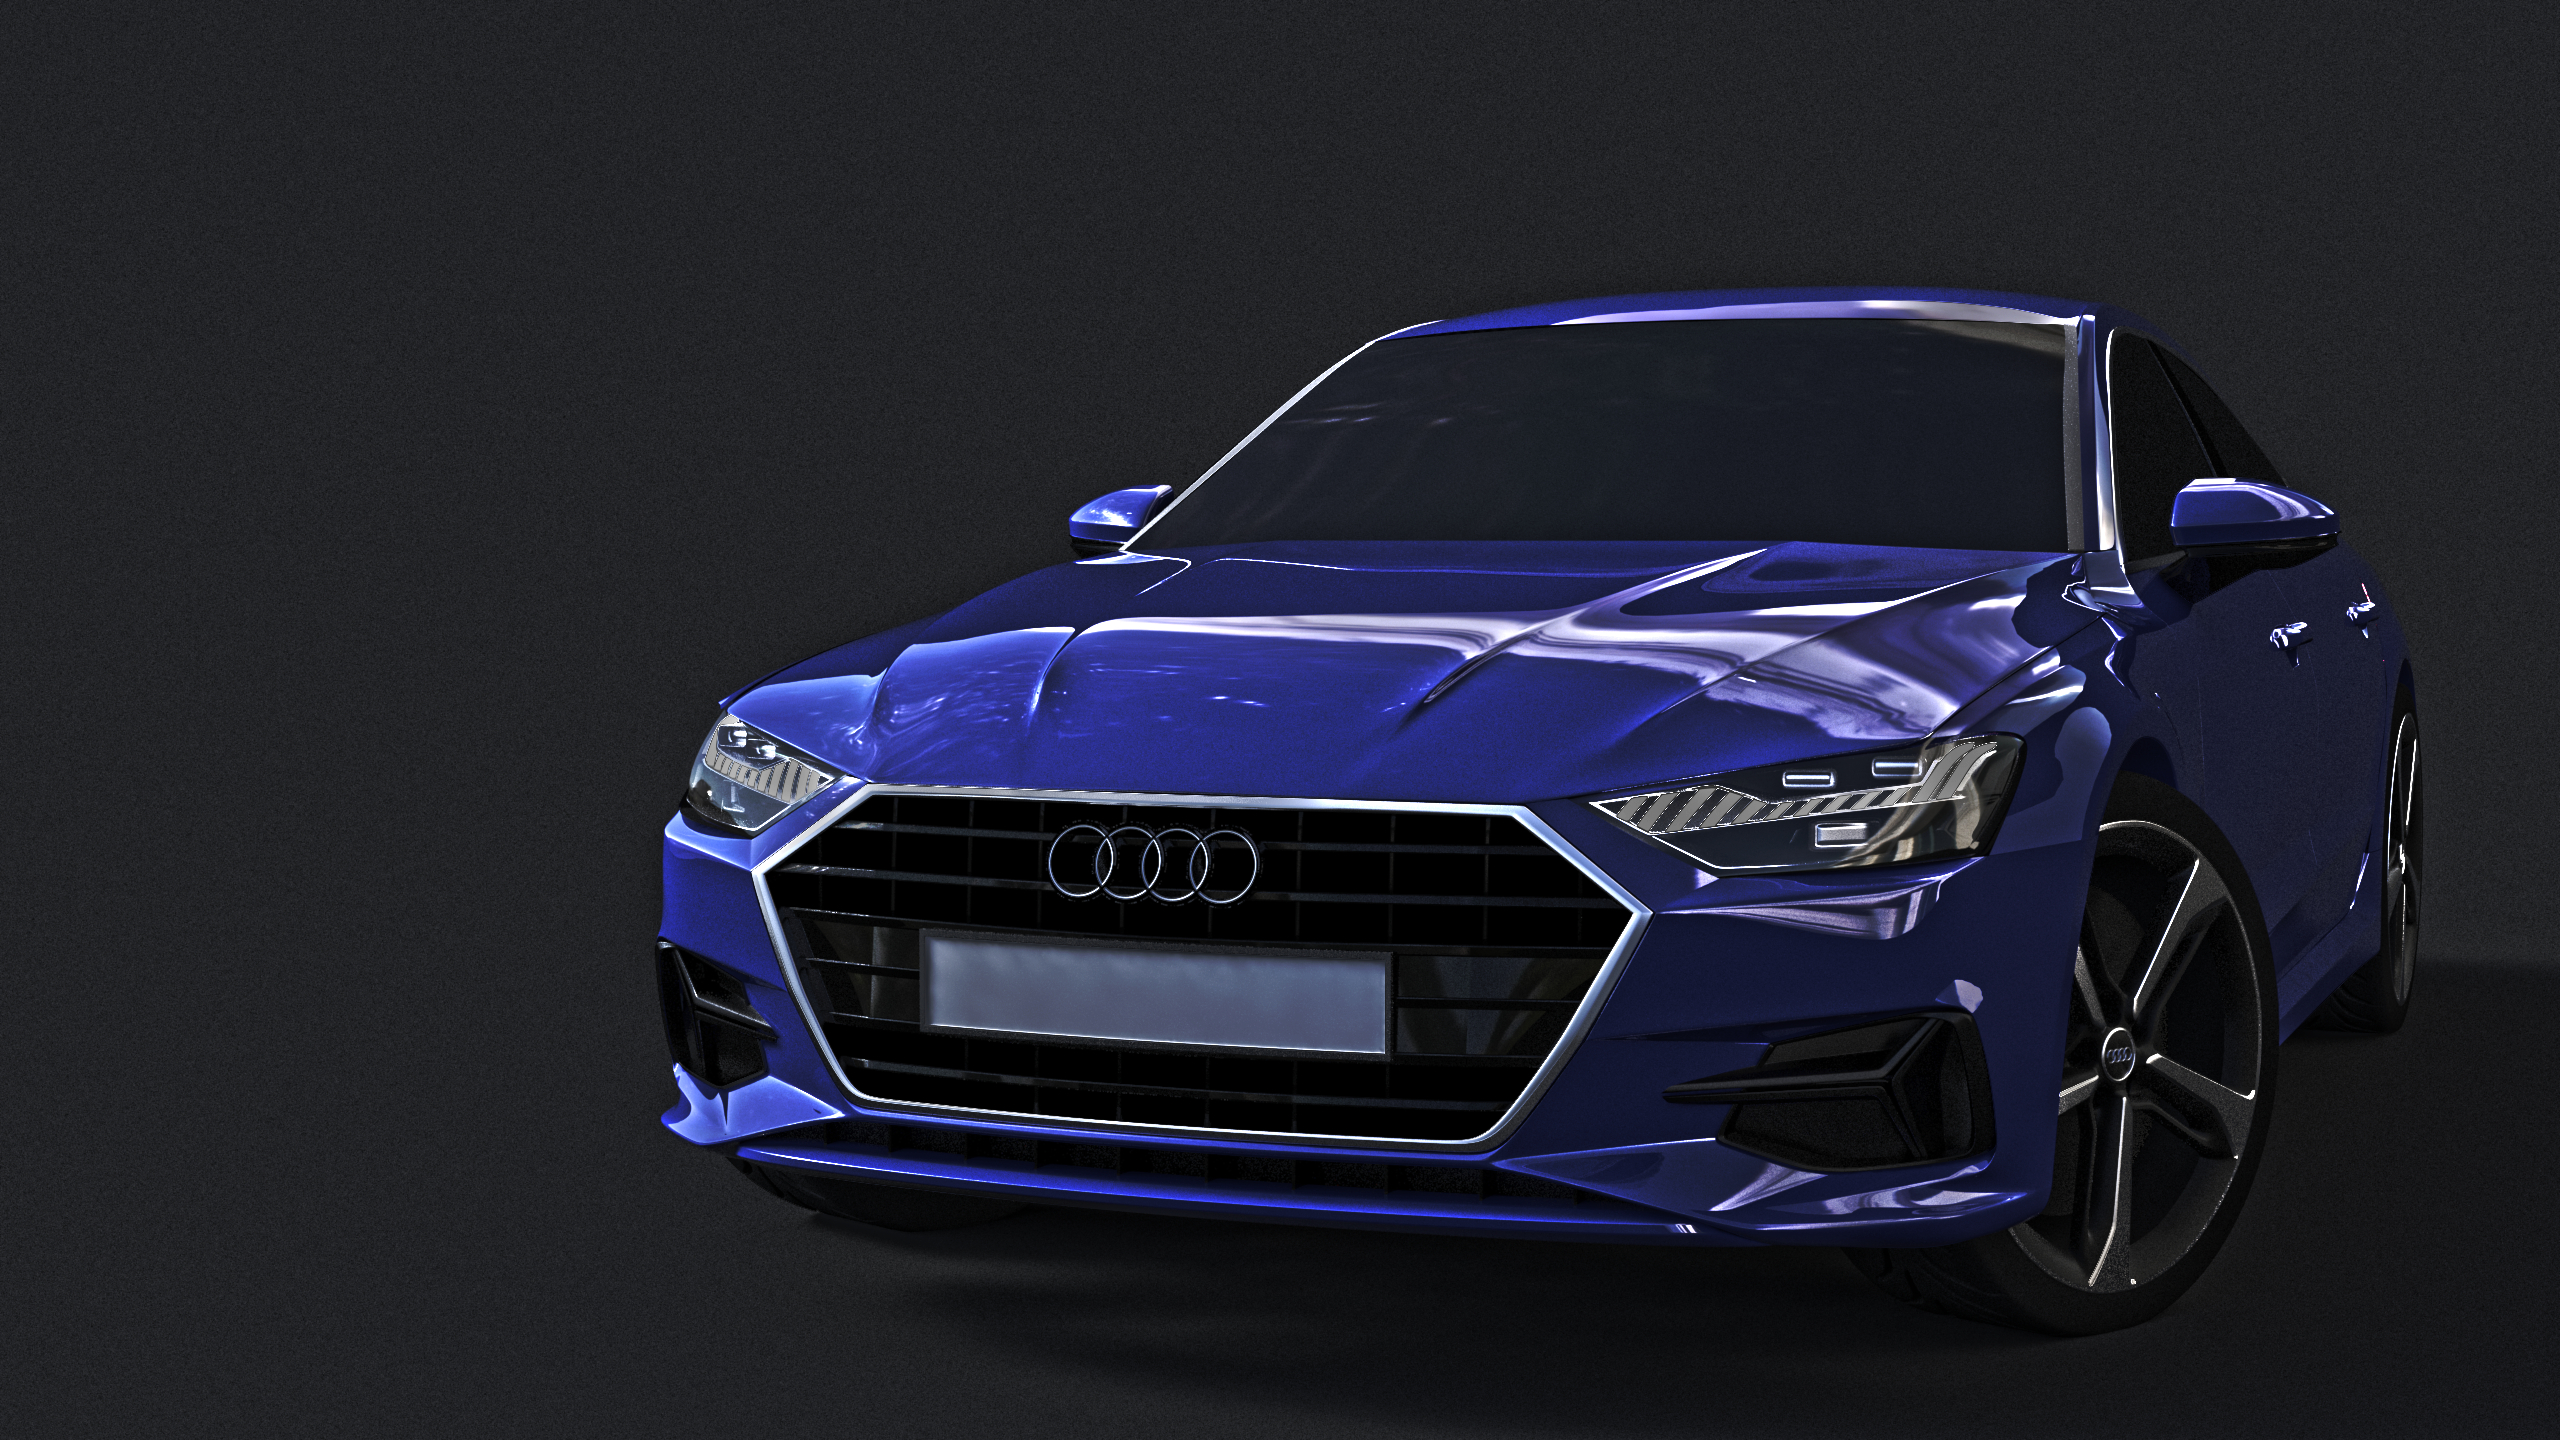 Audi em Blender cycles render imagem